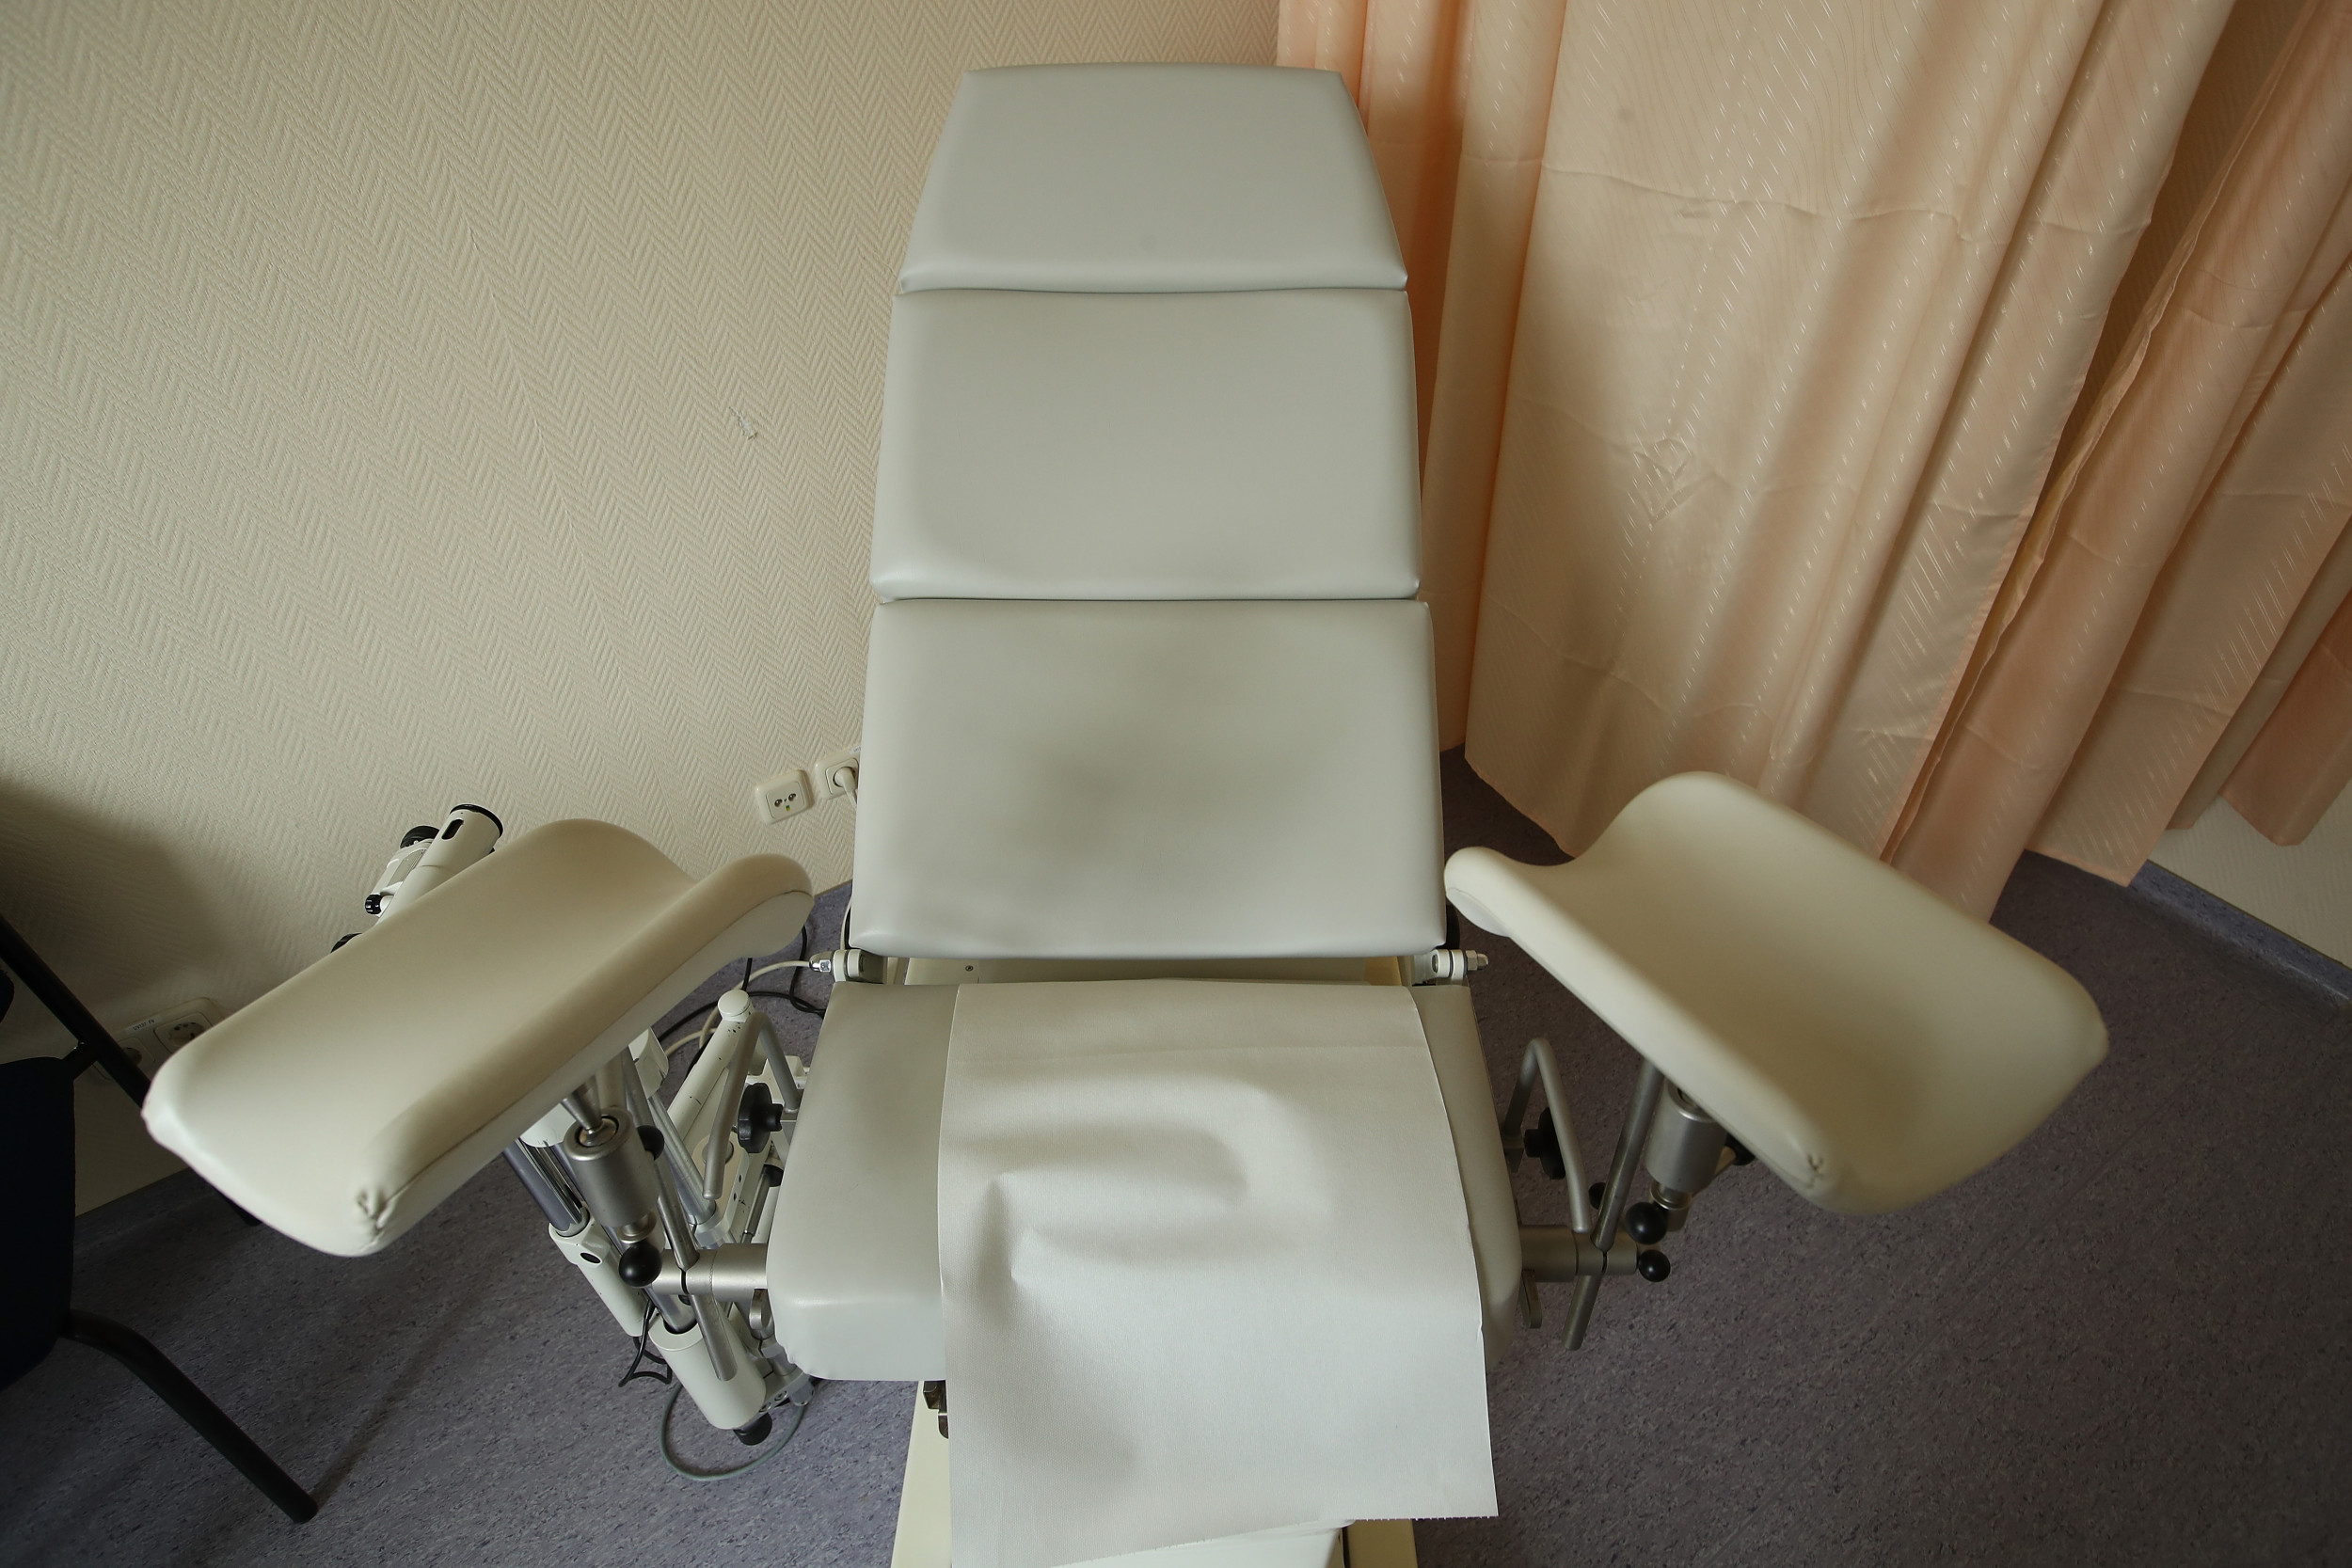 массаж на кресле гинеколога